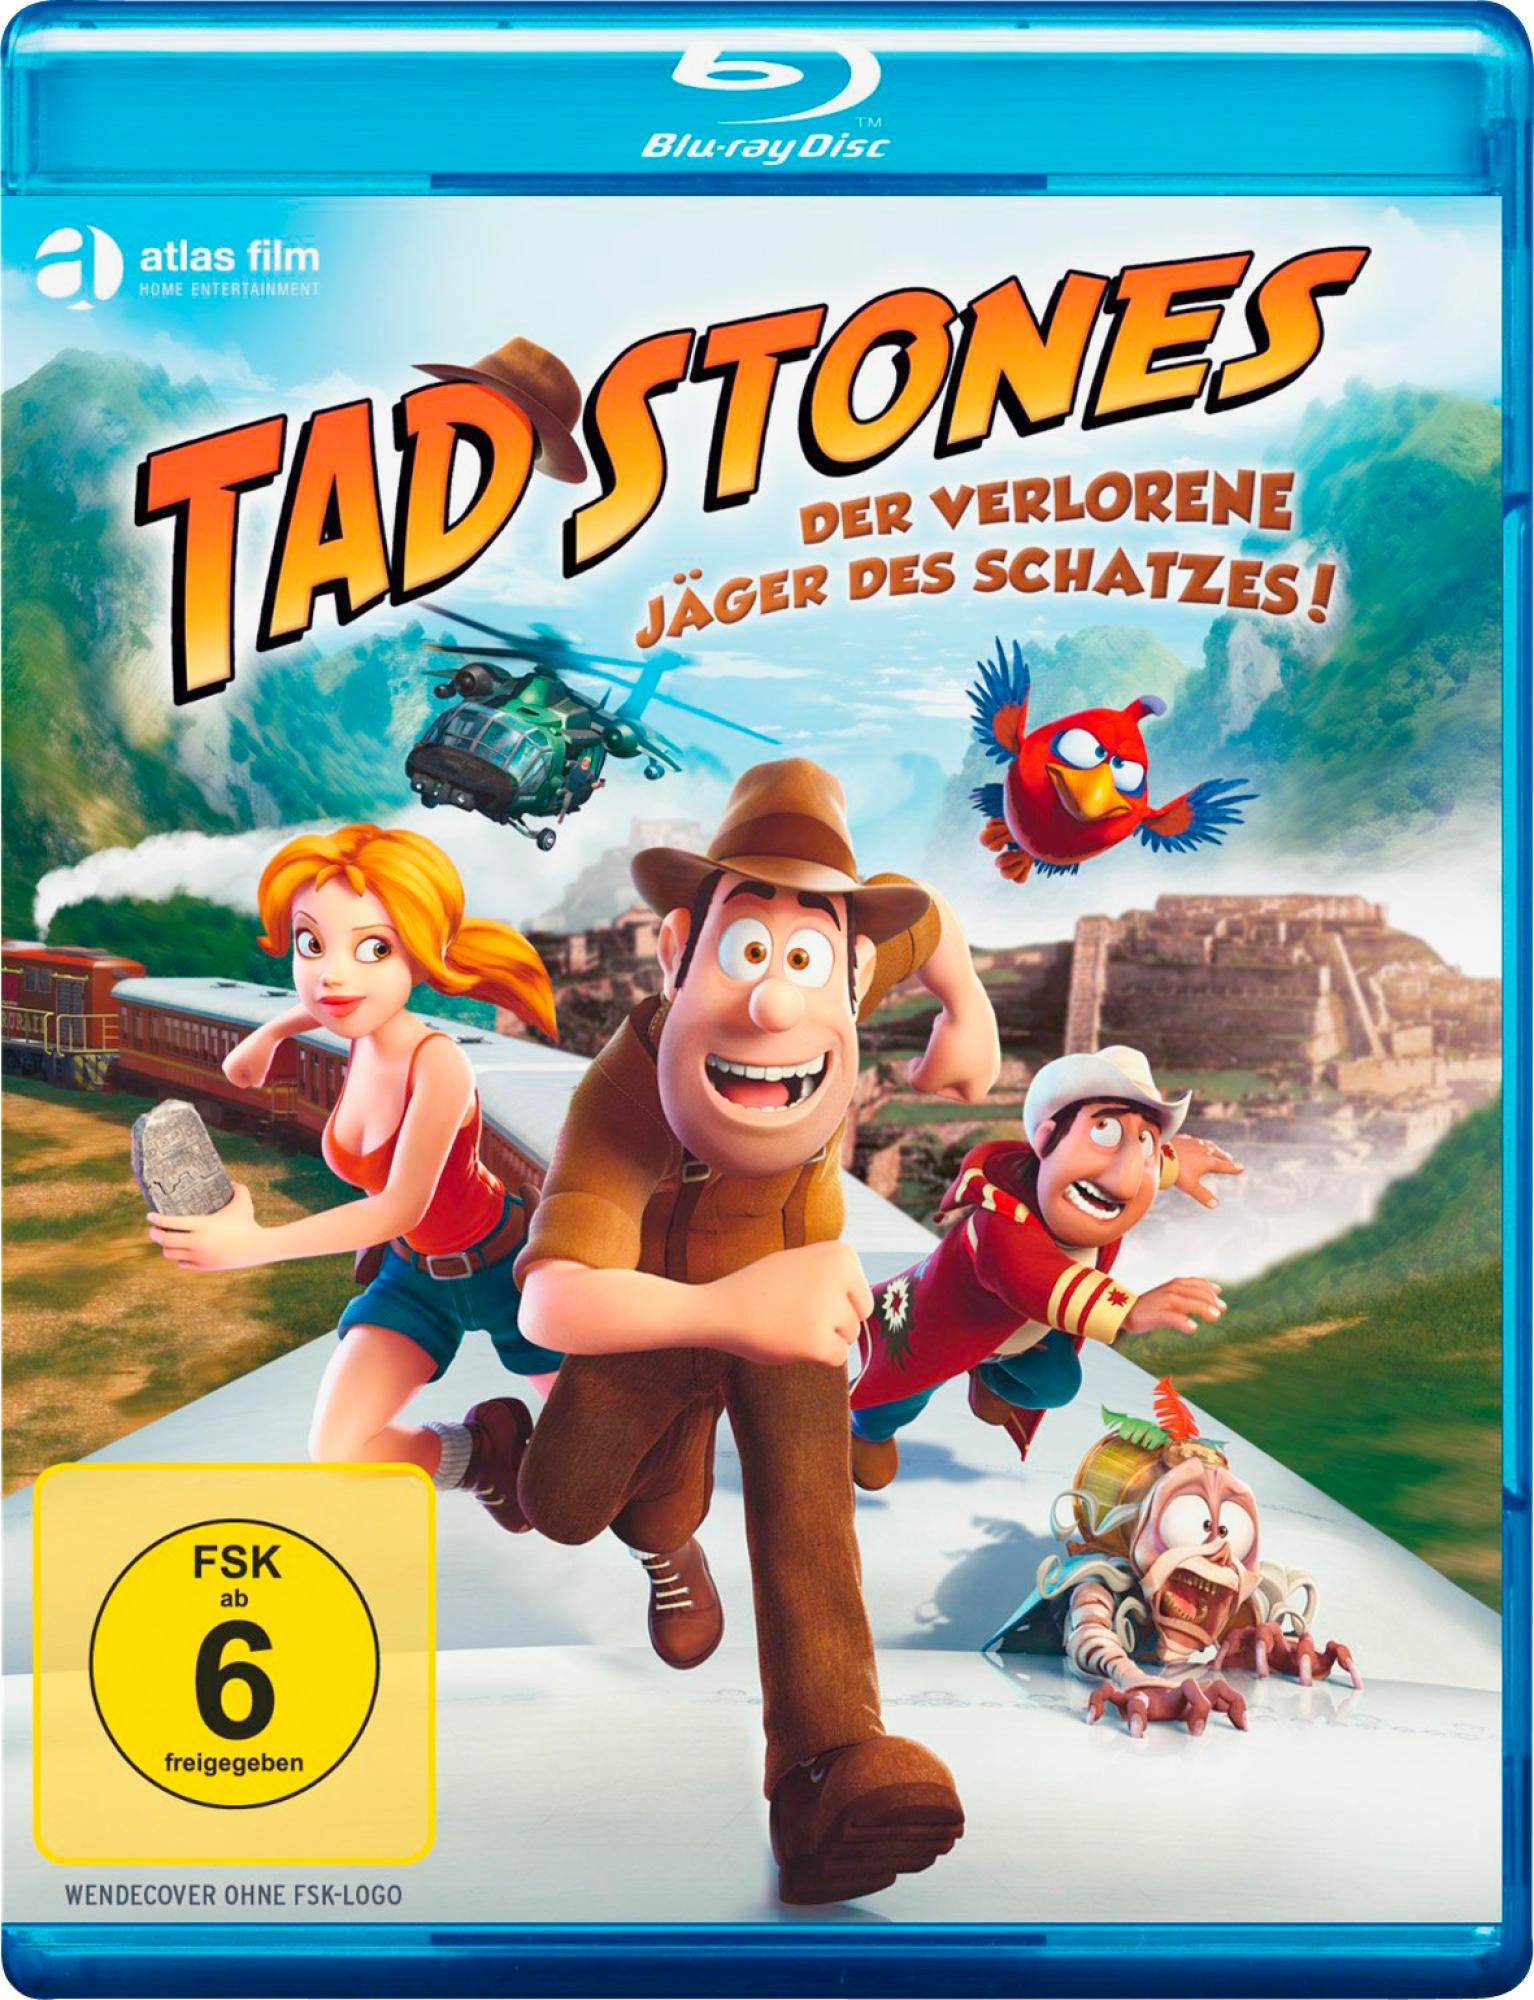 TAD STONES-DER VERLORENE JÄGER DES SCHATZES Blu-ray